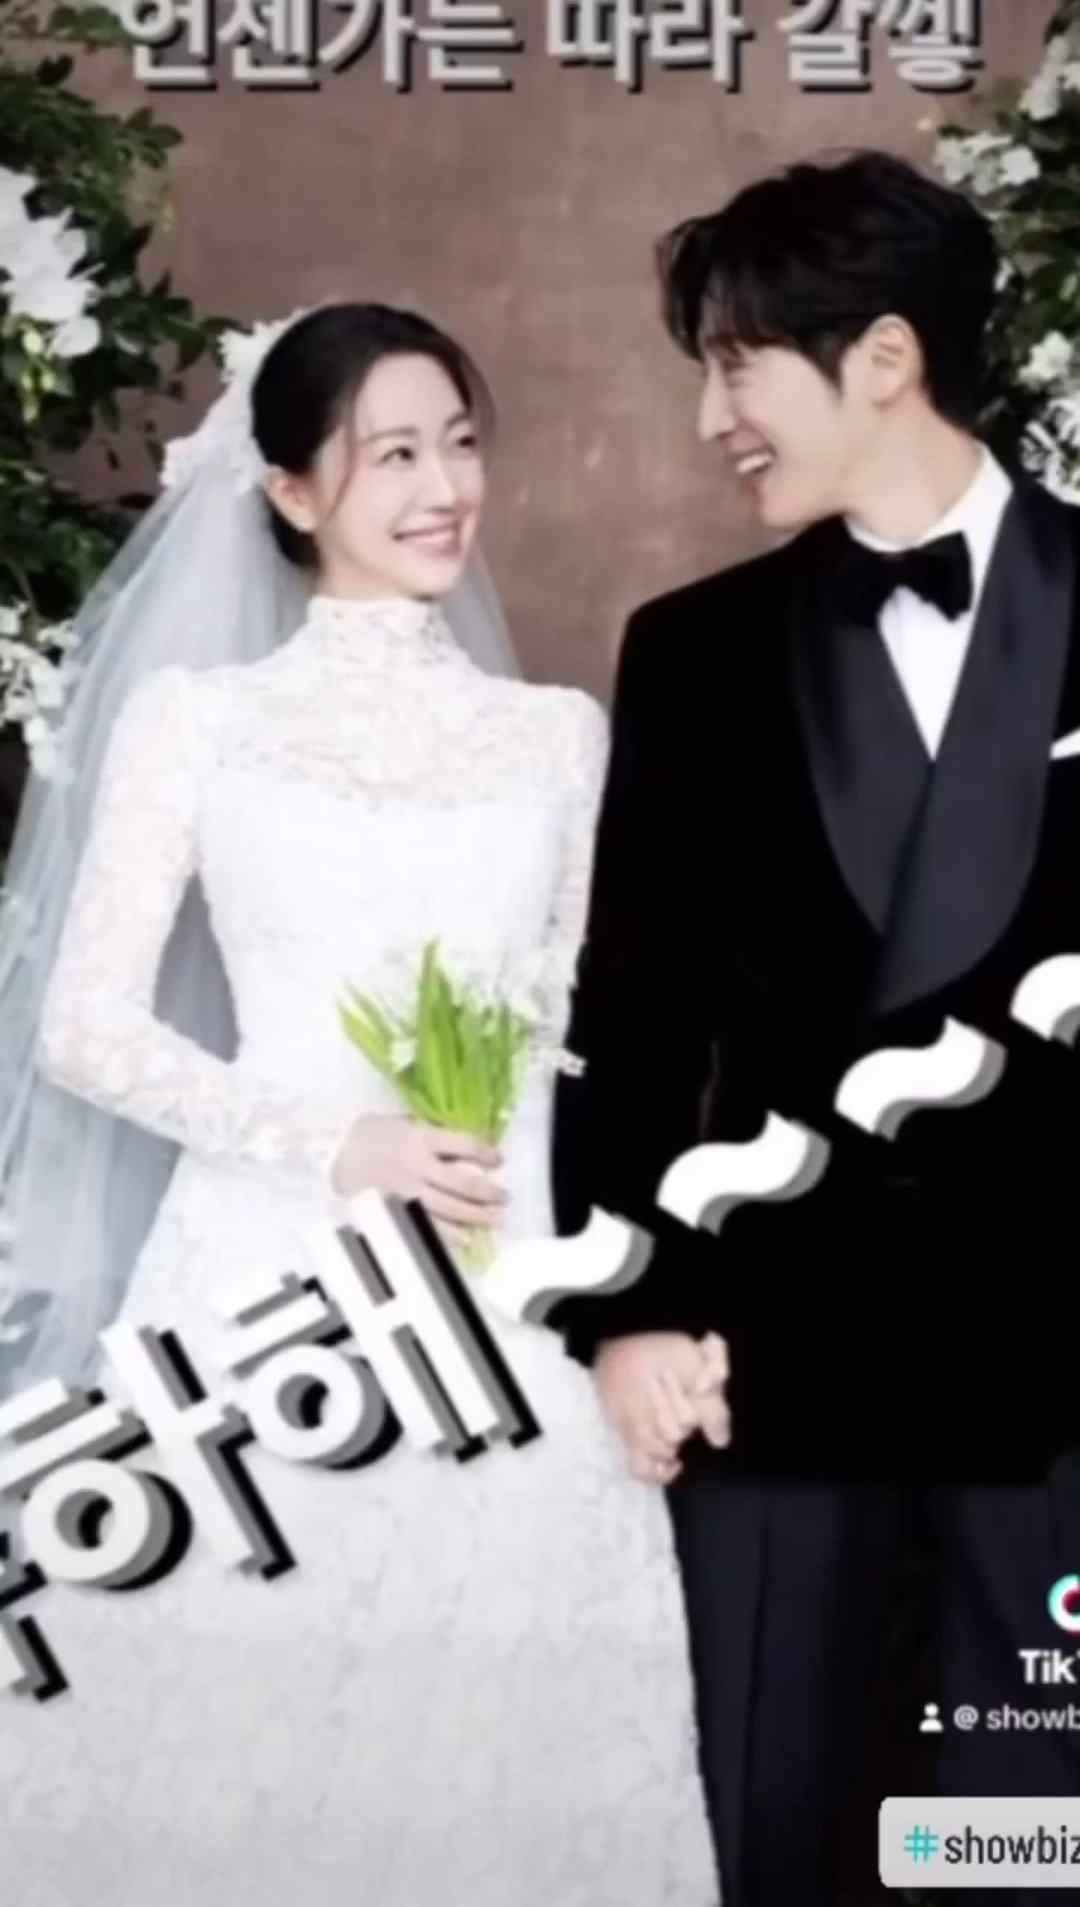 حفل زفاف الممثل الكوري الوسيم لي سانغ يوب وزوجته - كيبوبنا KPOPNA - كيبوبنا